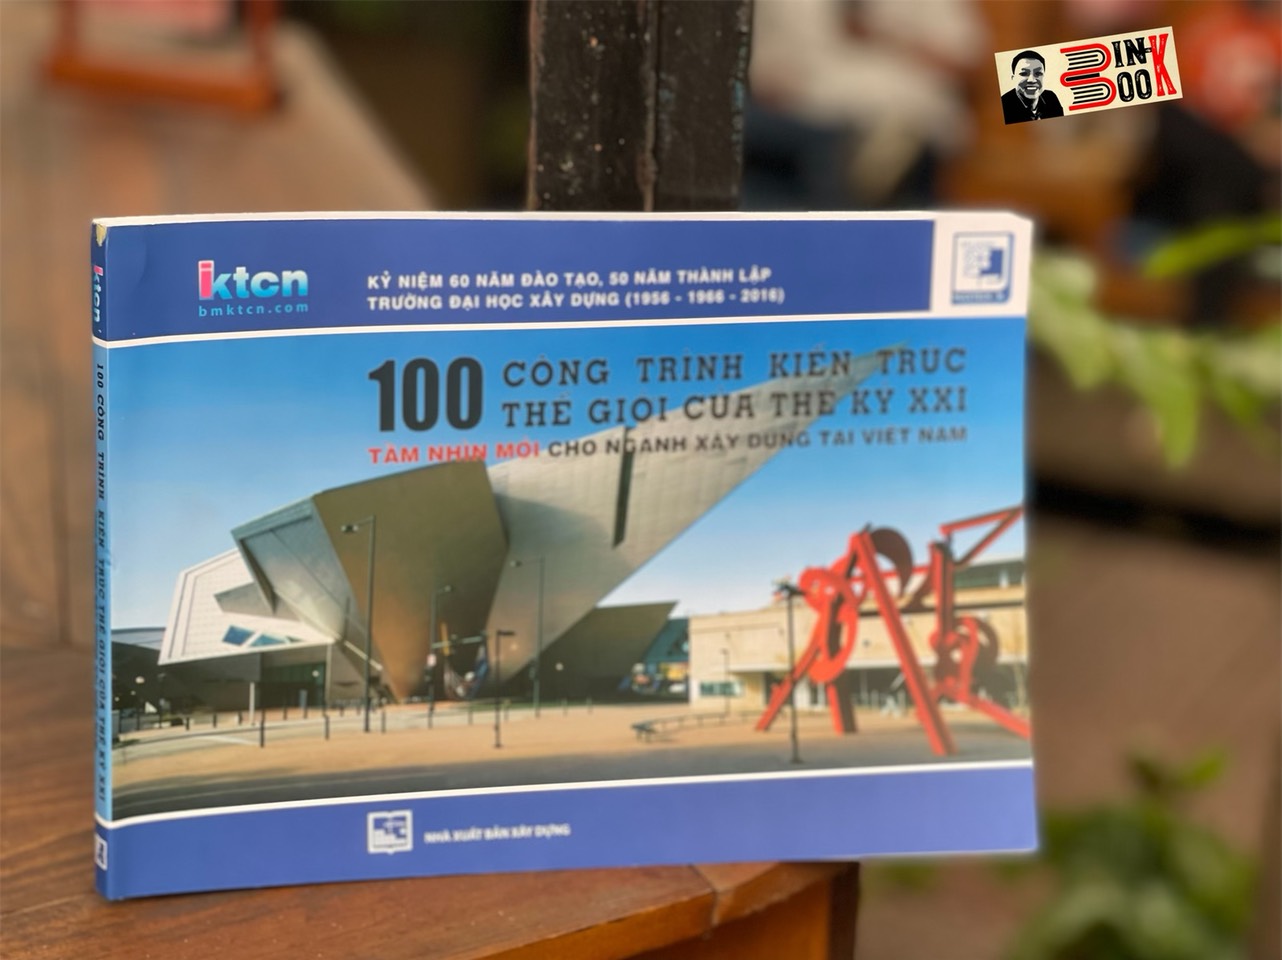 100 CÔNG TRÌNH KIẾN TRÚC THẾ GIỚI CỦA THẾ KỶ XXI - Tầm nhìn mới cho ngành xây dựng tại Việt Nam – NXB Xây Dựng (Bìa mềm)